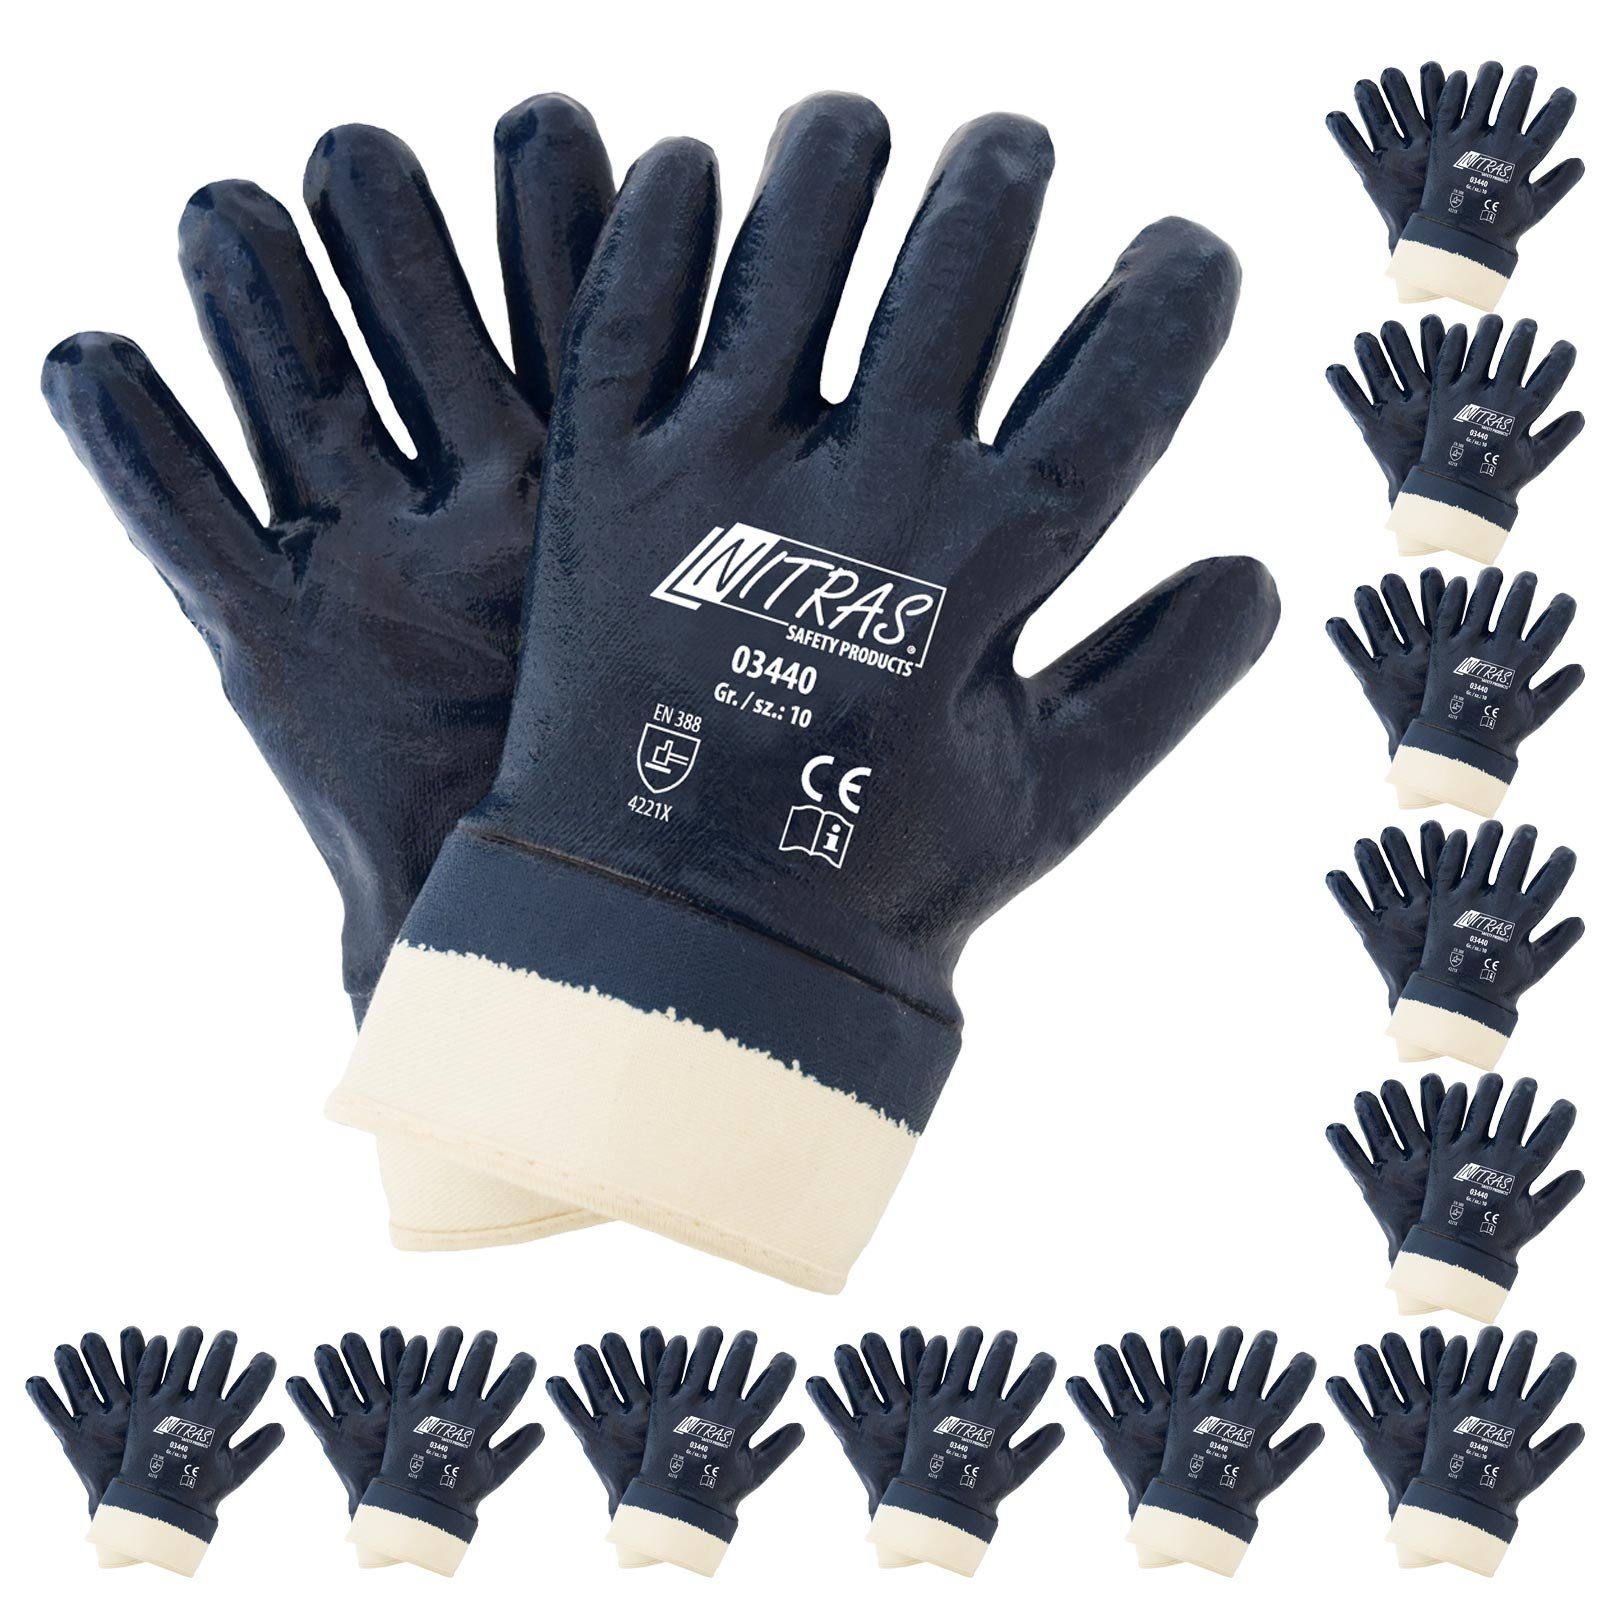 Nitras Nitril-Handschuhe NITRAS 03440 Nitrilhandschuhe Arbeitshandschuhe mit Stulpe - 12 Paar (Spar-Set)